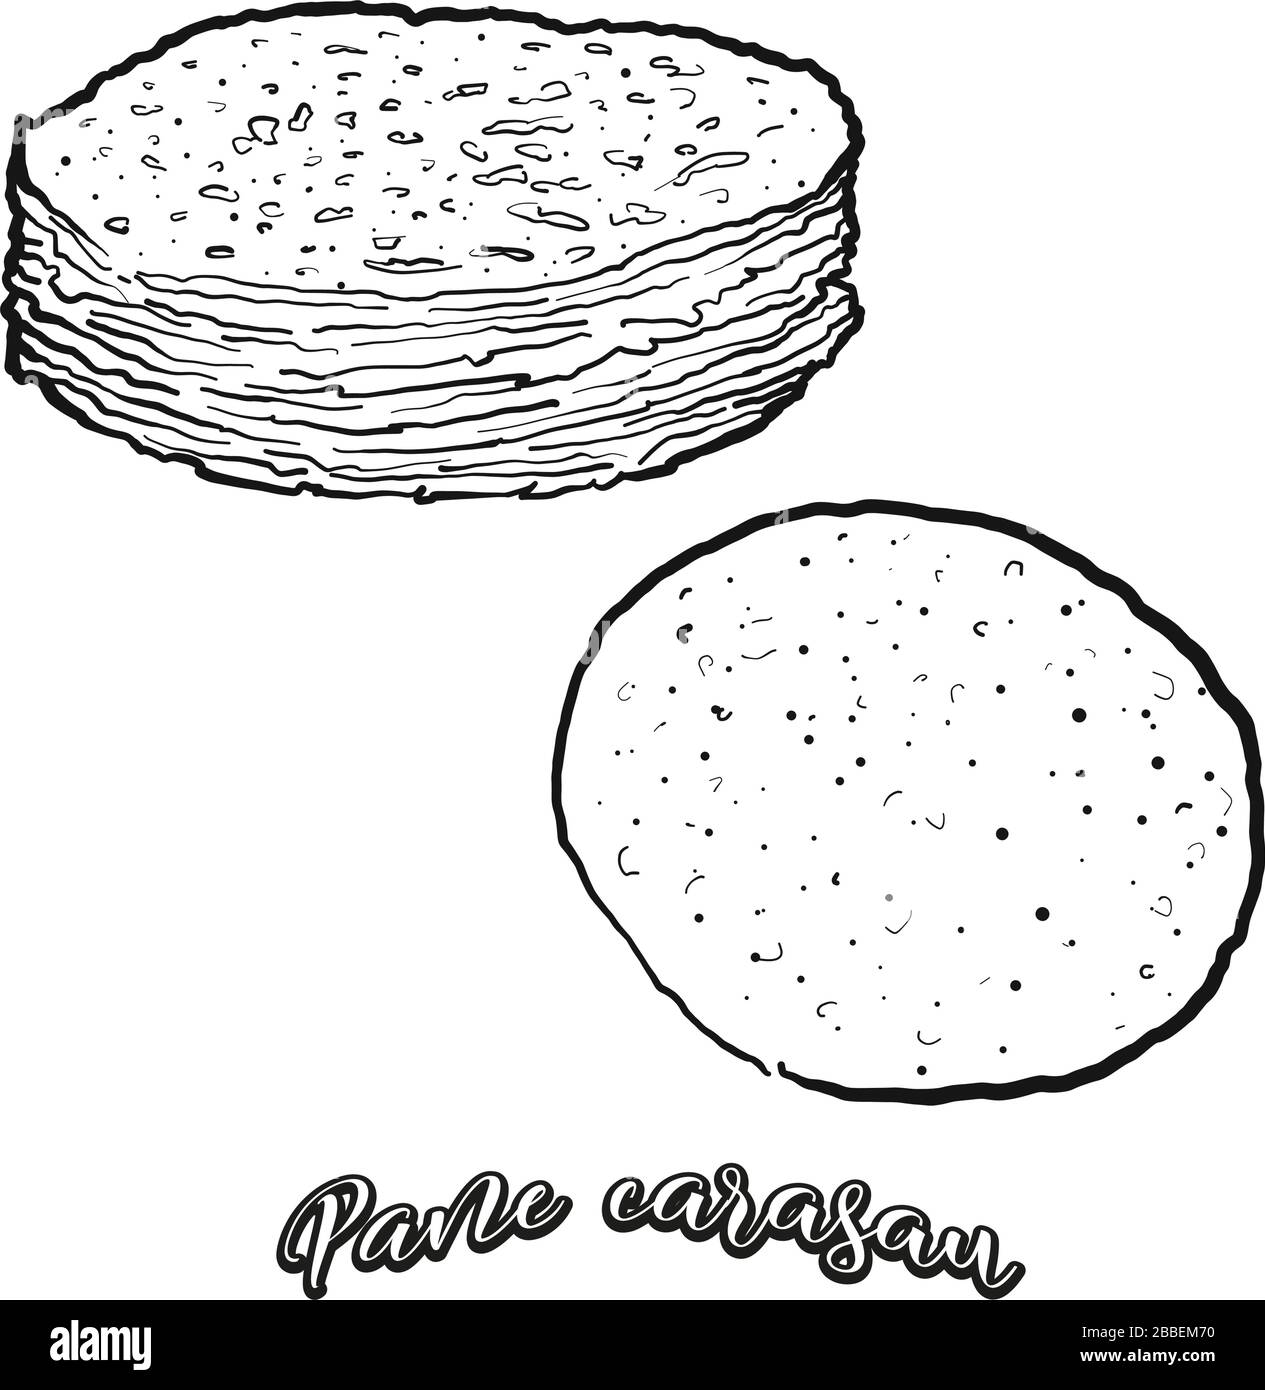 Pan-Karasau-Essenskizze in Weiß getrennt. Vektor-Zeichnung von Fladenbrot, in der Regel auf Sardinien bekannt. Lebensmittel-Illustration-Serie. Stock Vektor